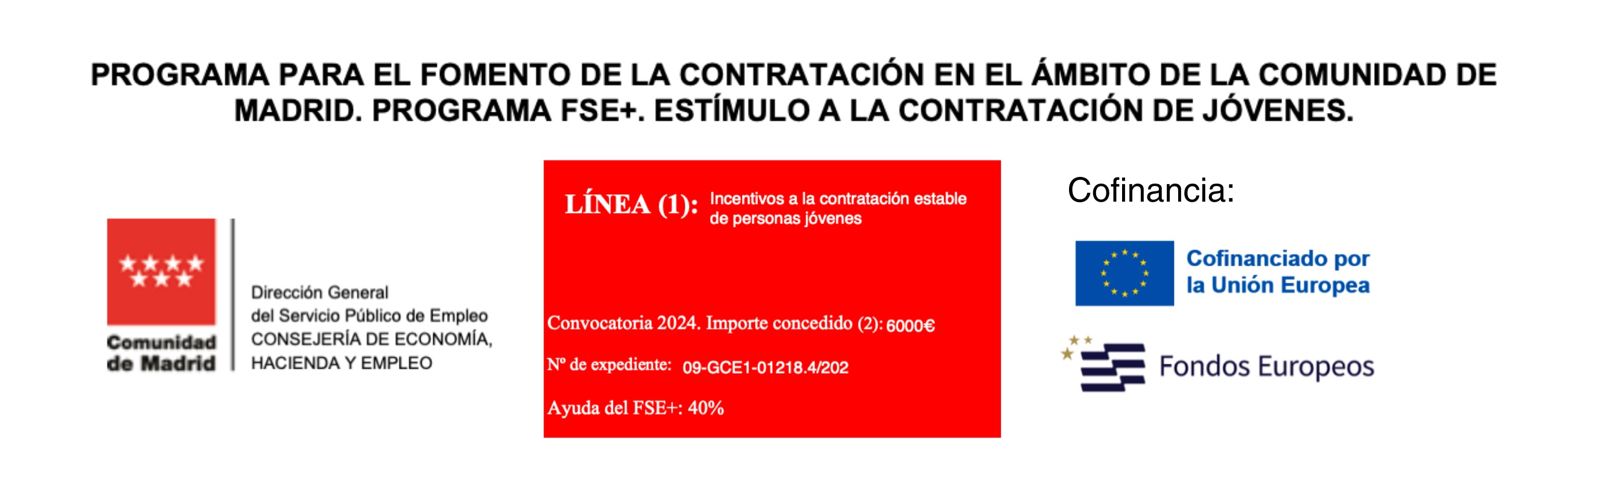 Programa para el fomento de la contratación en el ámbito de la Comunidad de Madrid. Programa FSE+. Estímulo a la contratación de jovenes.